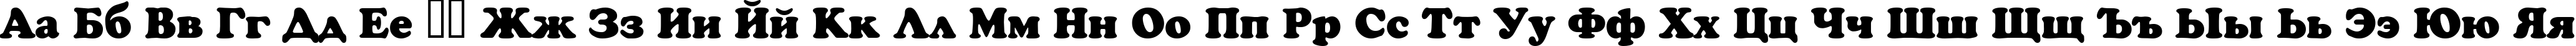 Пример написания русского алфавита шрифтом Crown